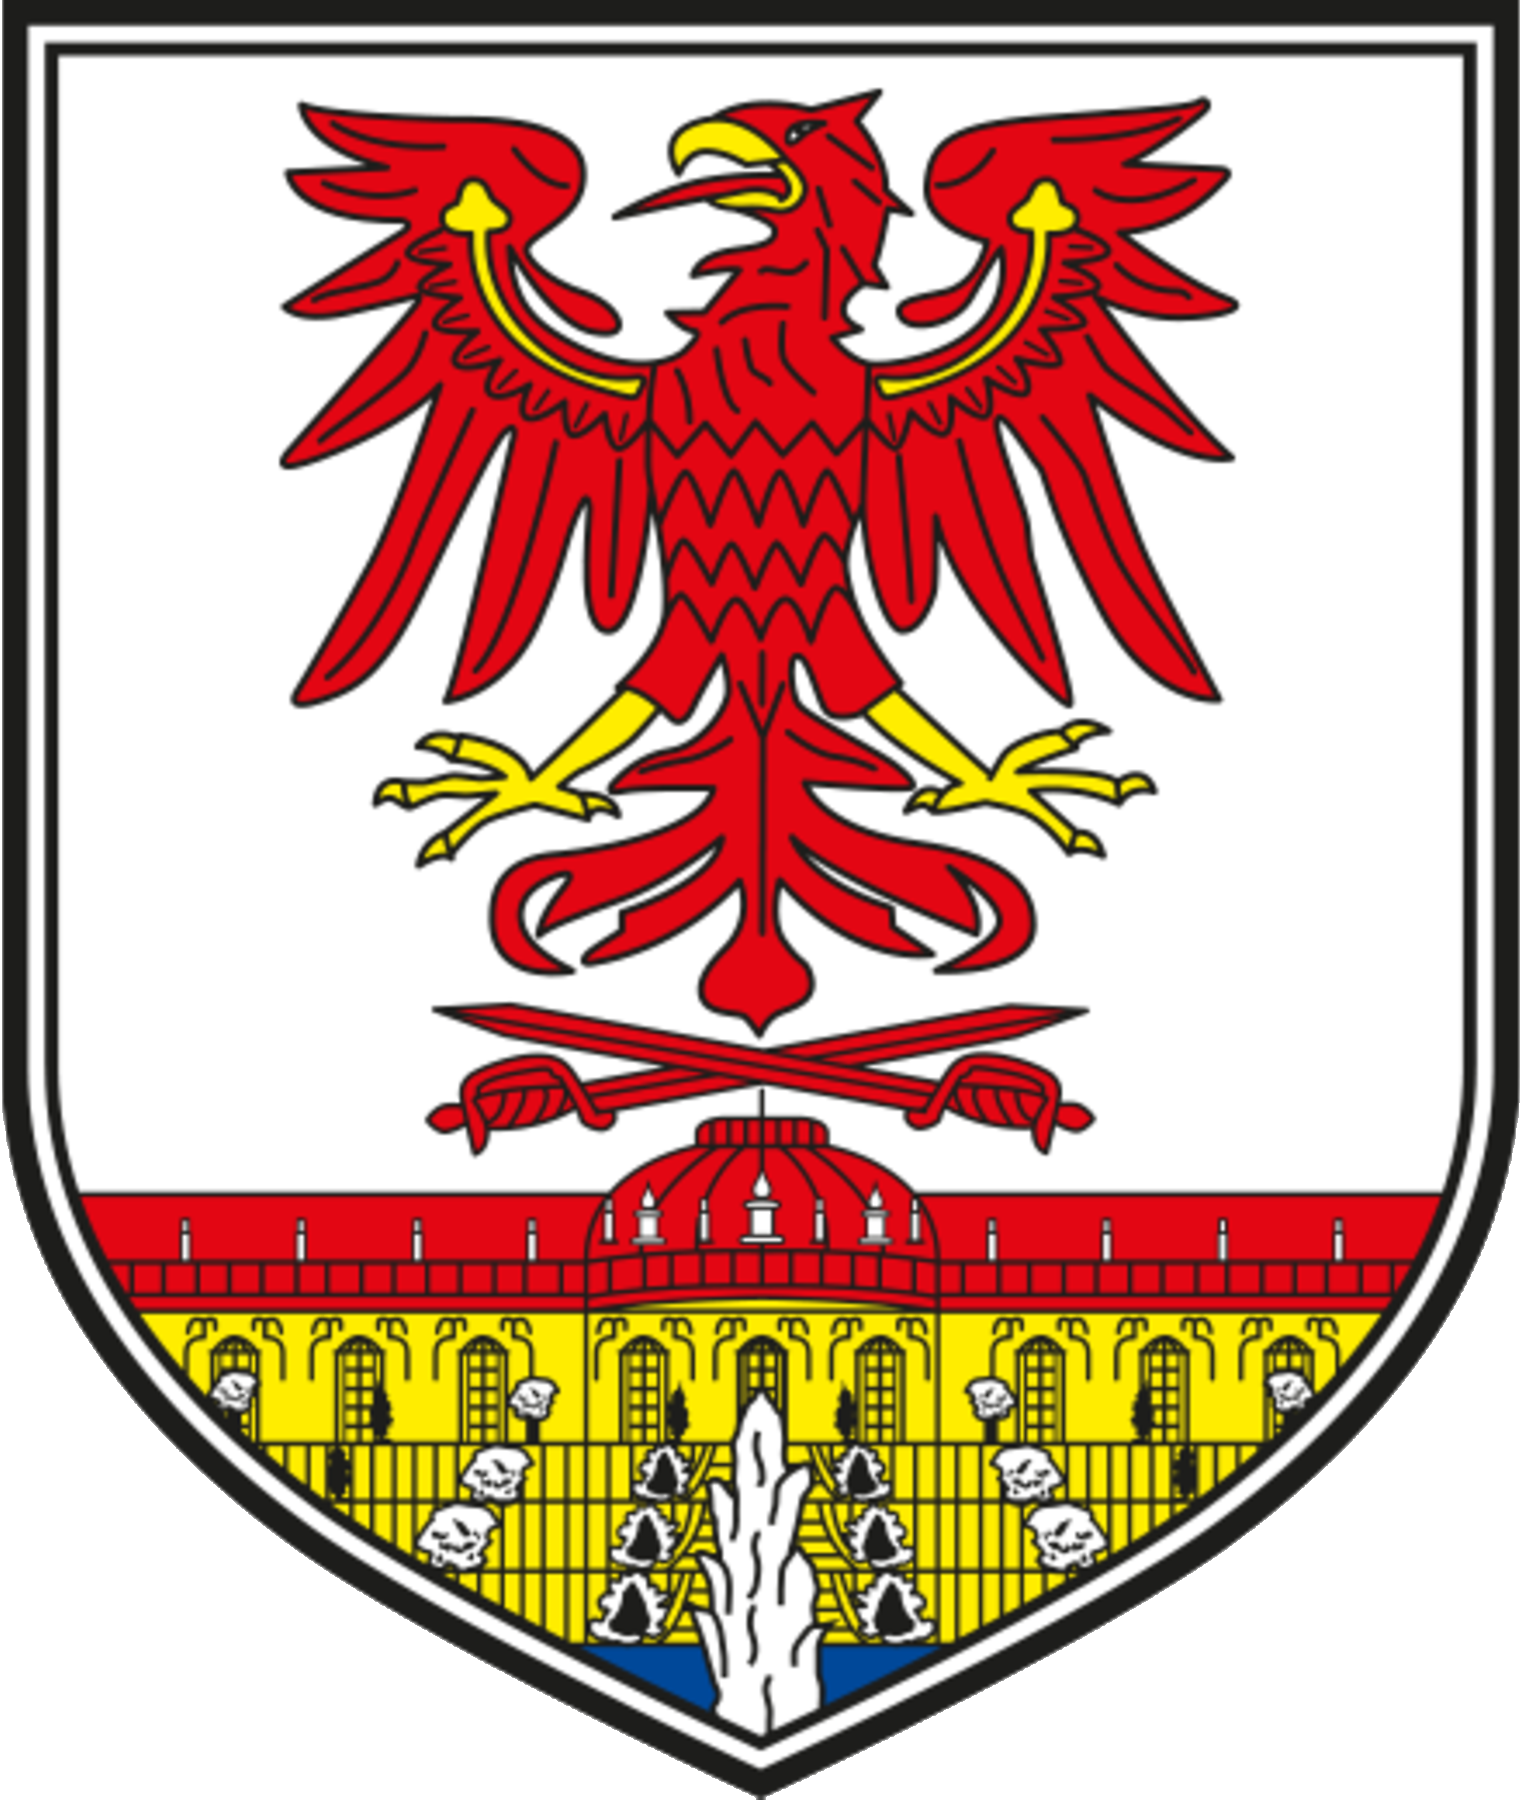 Wappen und Flagge  Brandenburgische Landeszentrale für politische Bildung